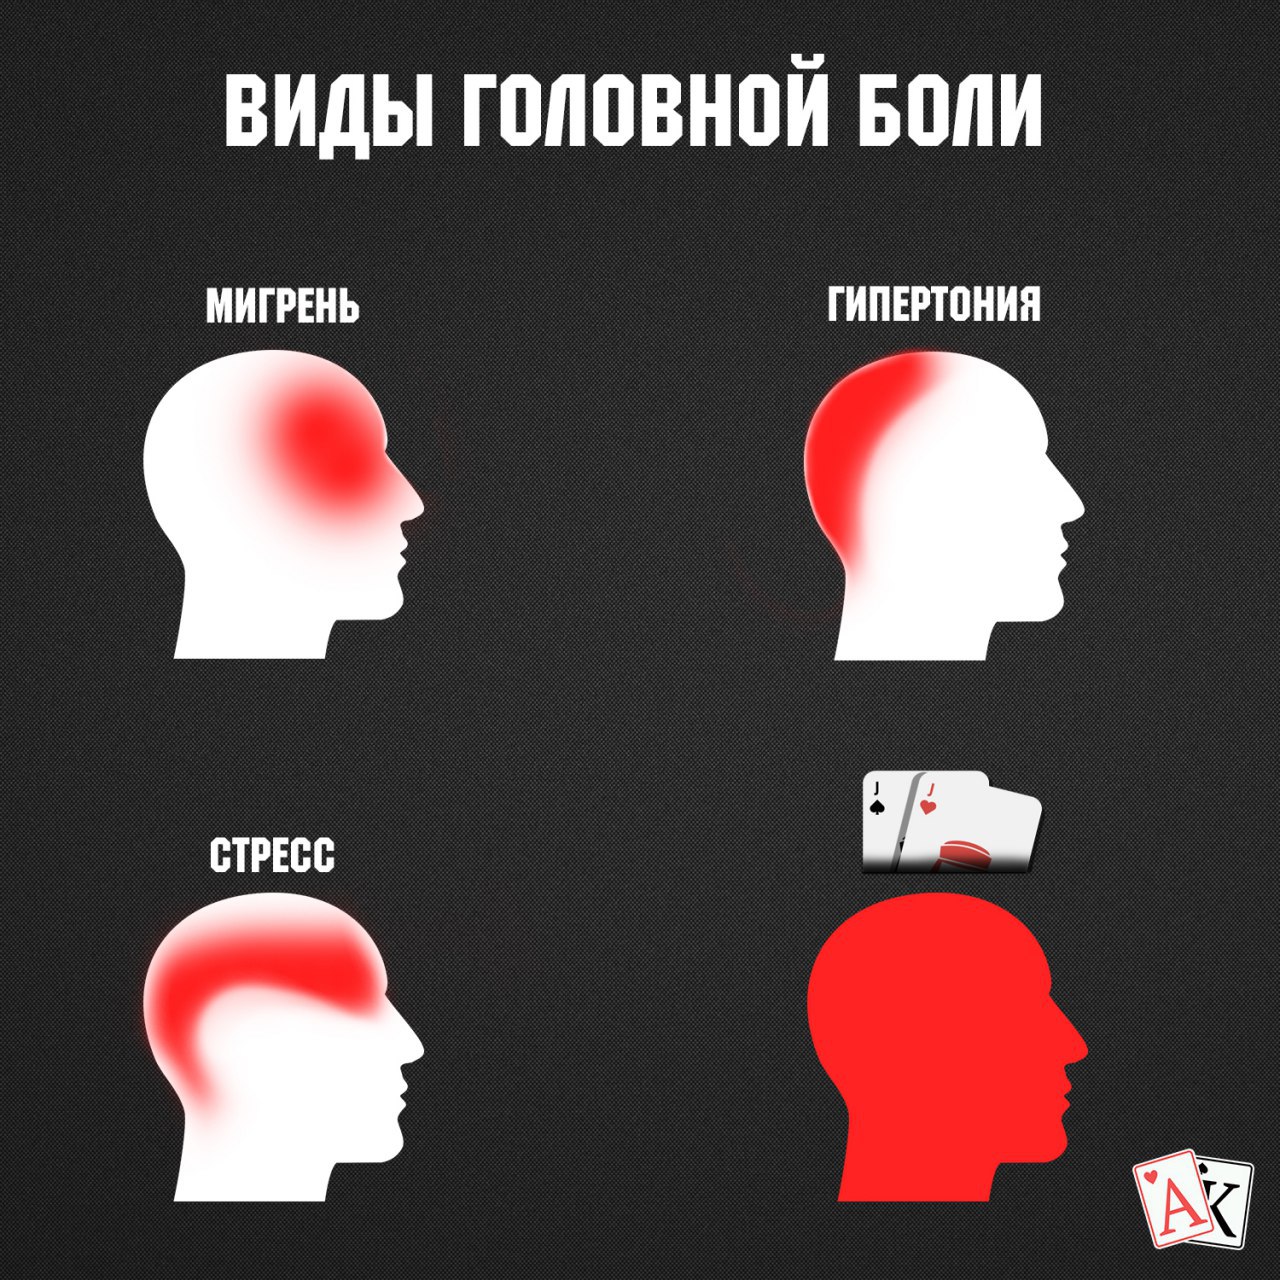 Затылок болит причины у мужчин. Виды головной боли. Болит голова. Локализация боли в голове. Типы головной боли картинки.